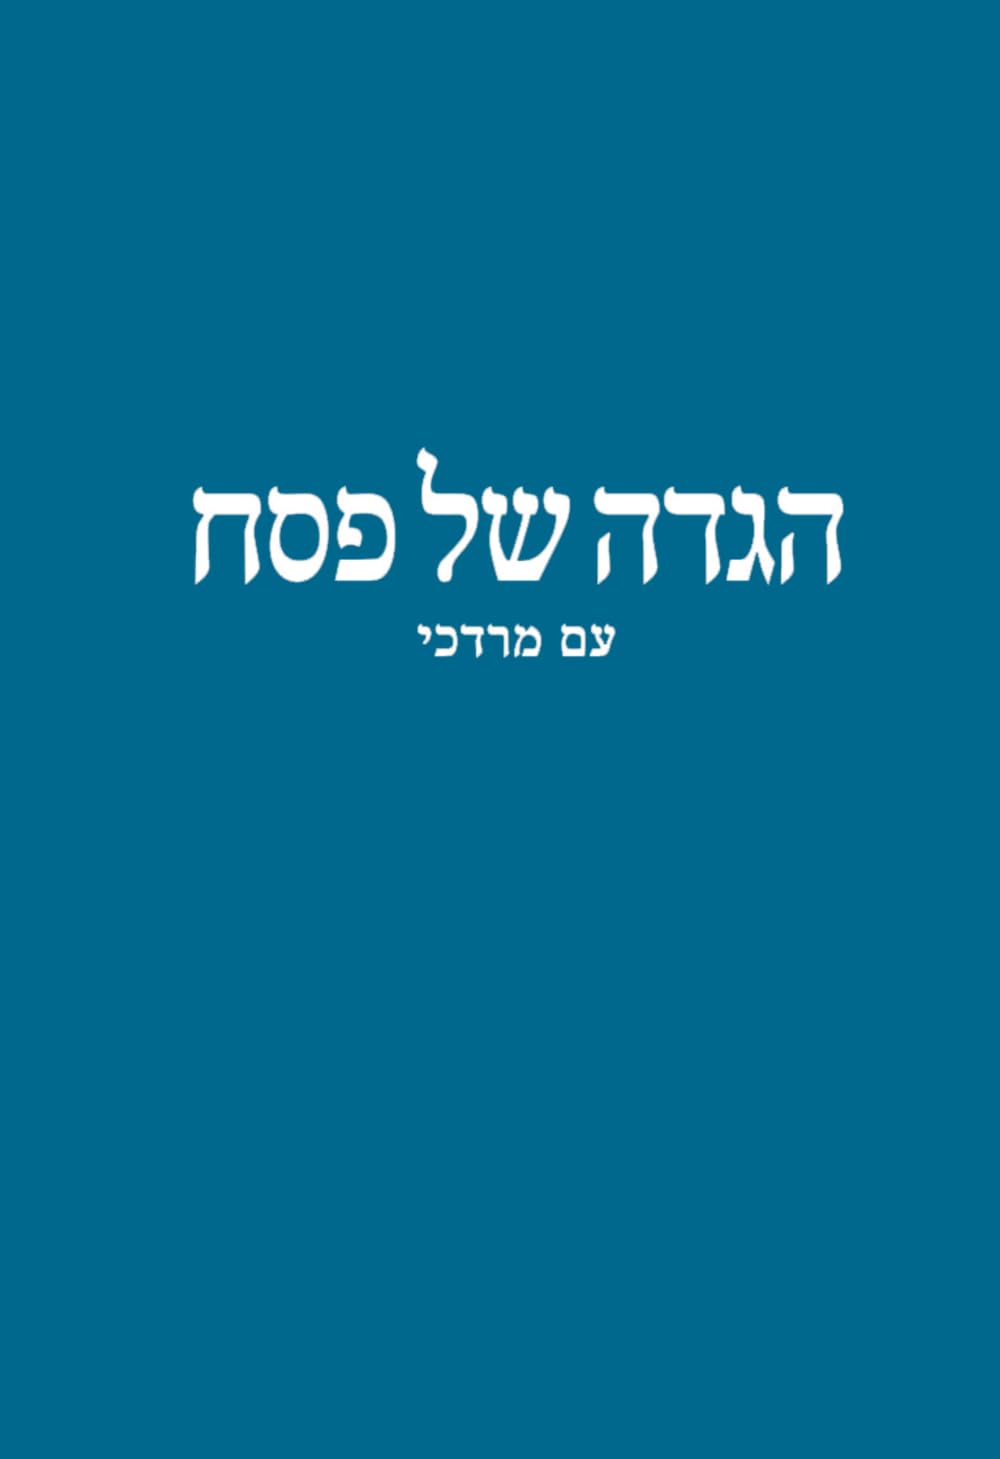 Haggadah Shel Pesach Am Mordechai SOFTCOVER